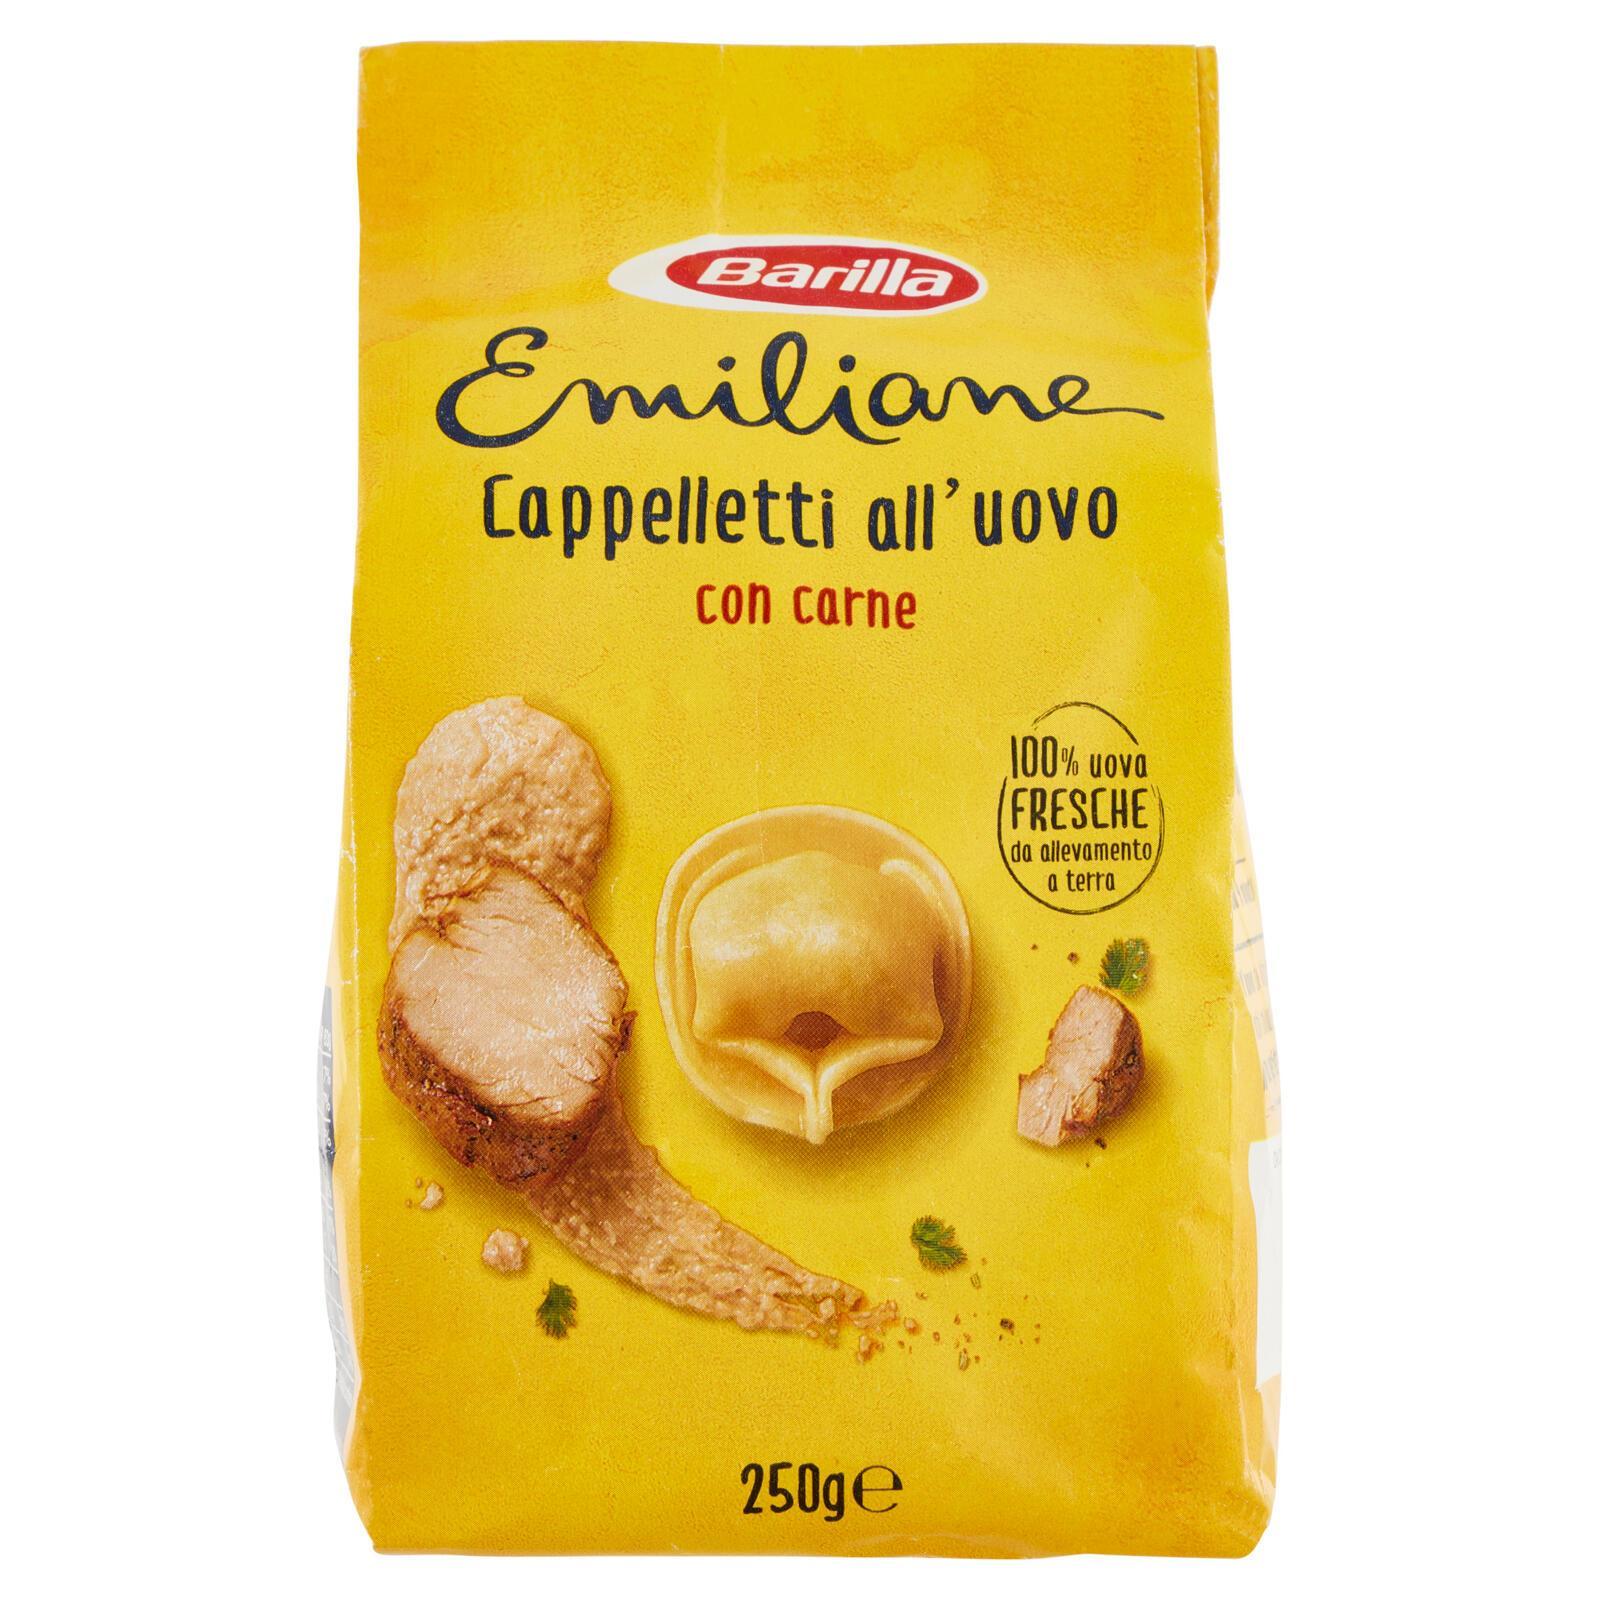 pasta-cappelletti-alla-carne-barilla-250gr-1